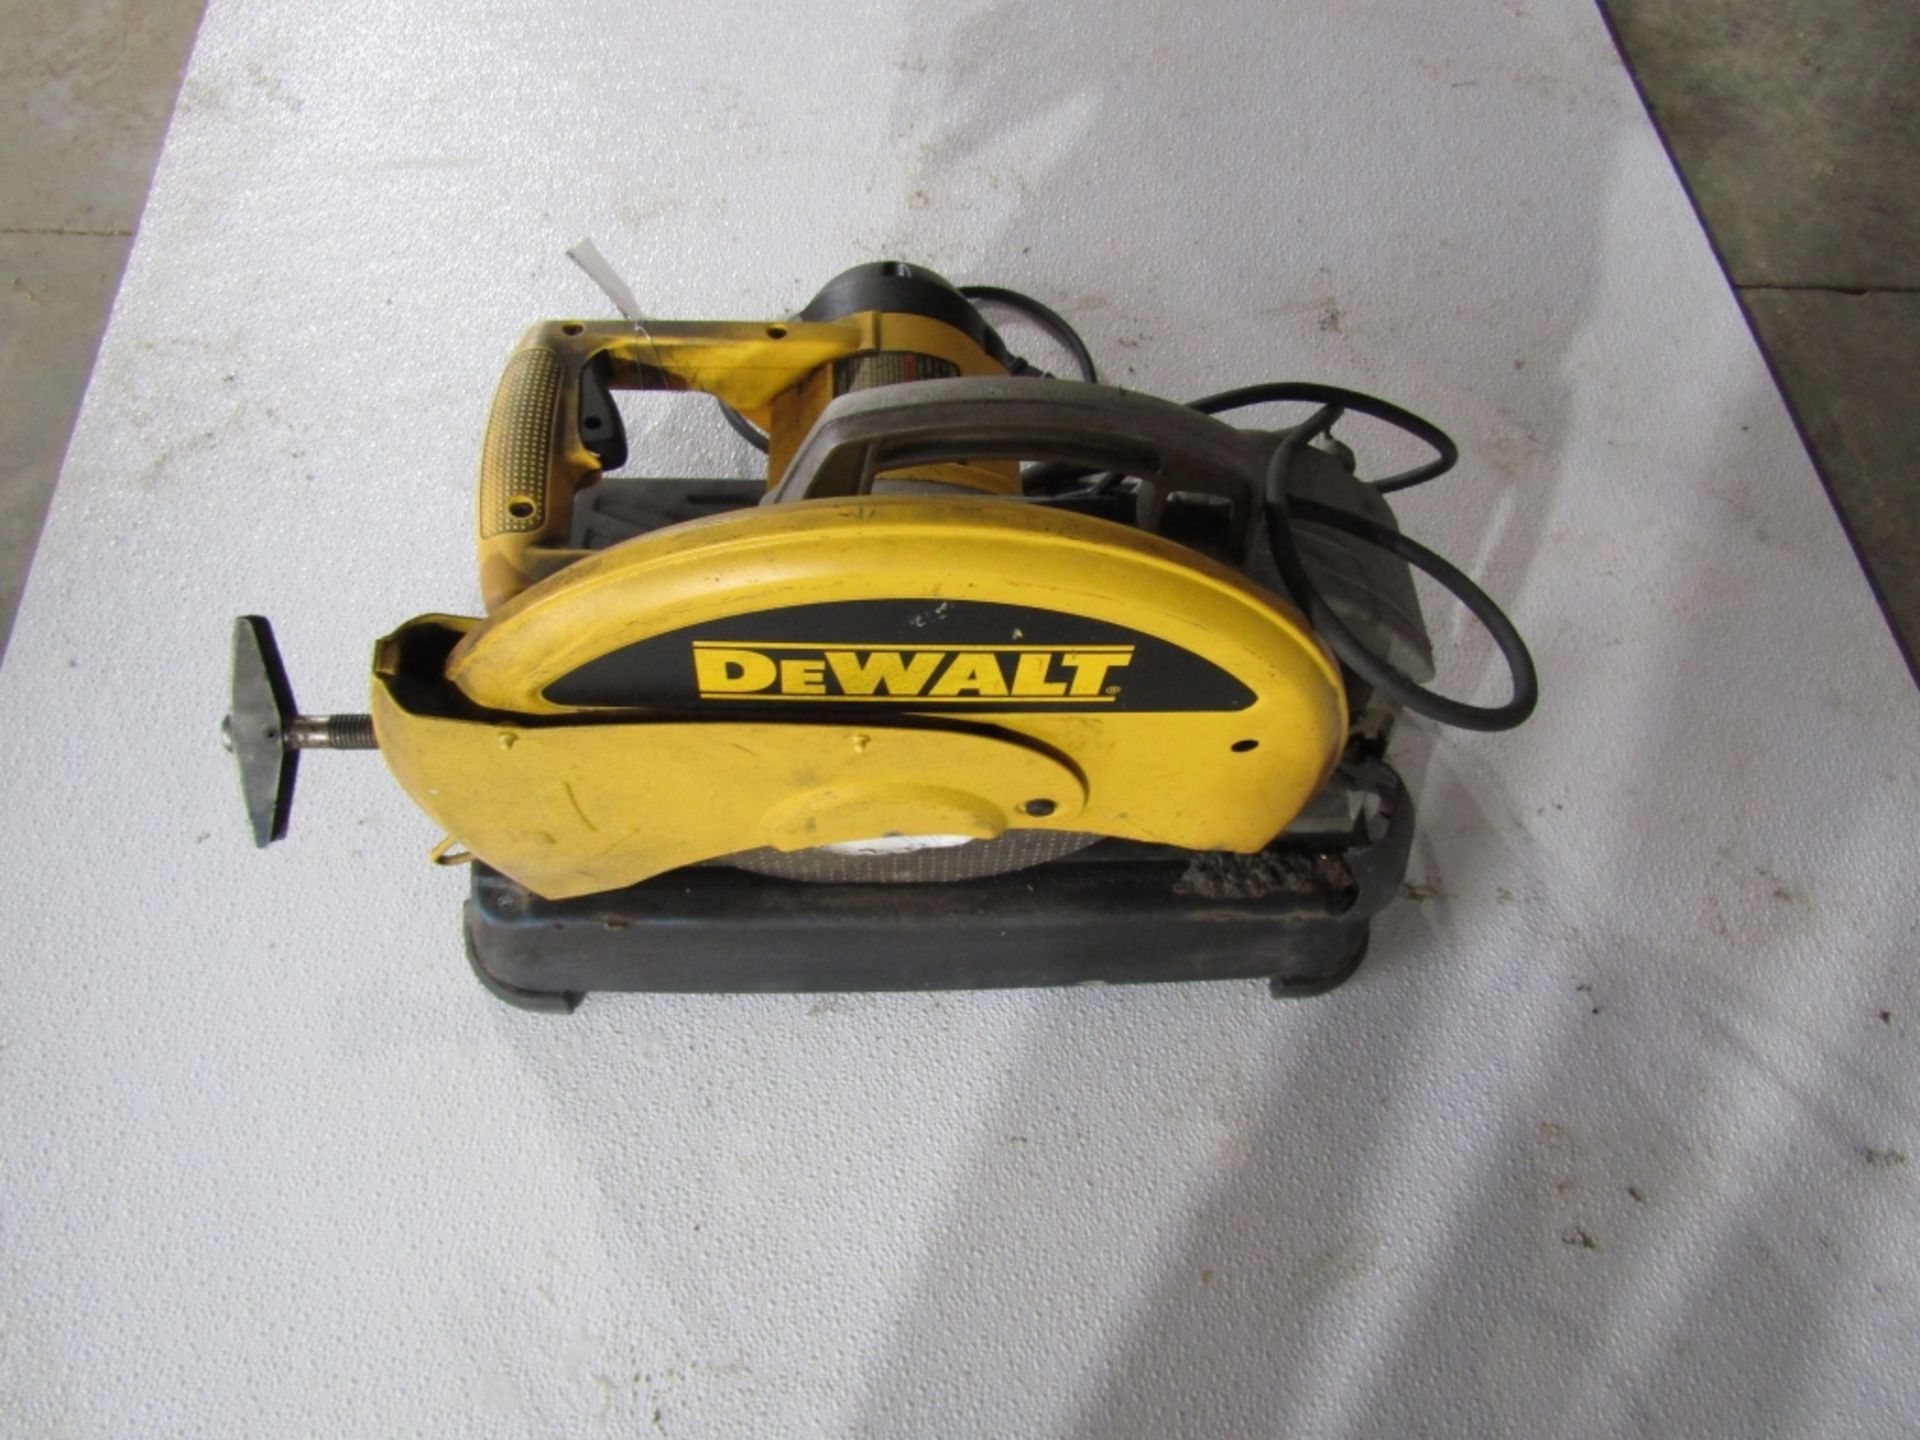 DeWalt Chop Saw, Model # DW371, Serial # 729085, Located in Hopkinton, IA - Image 2 of 3